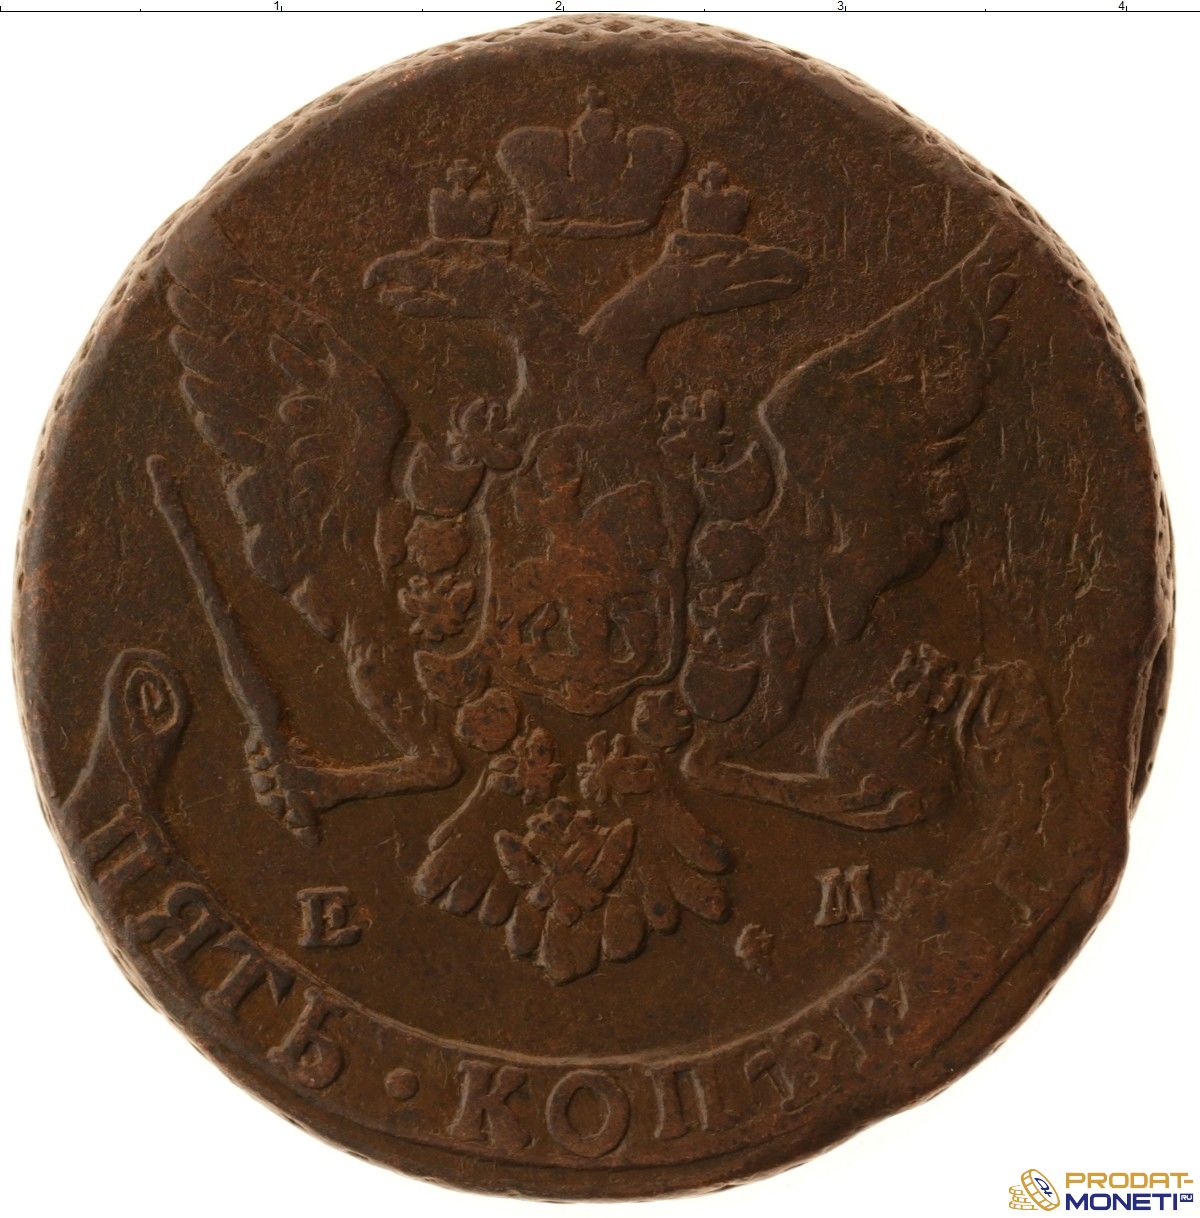 Монета екатерины 5 копеек. Монеты Екатерины 2 5 копеек. Монета Екатерины 2 медь 5 копеек 1766.